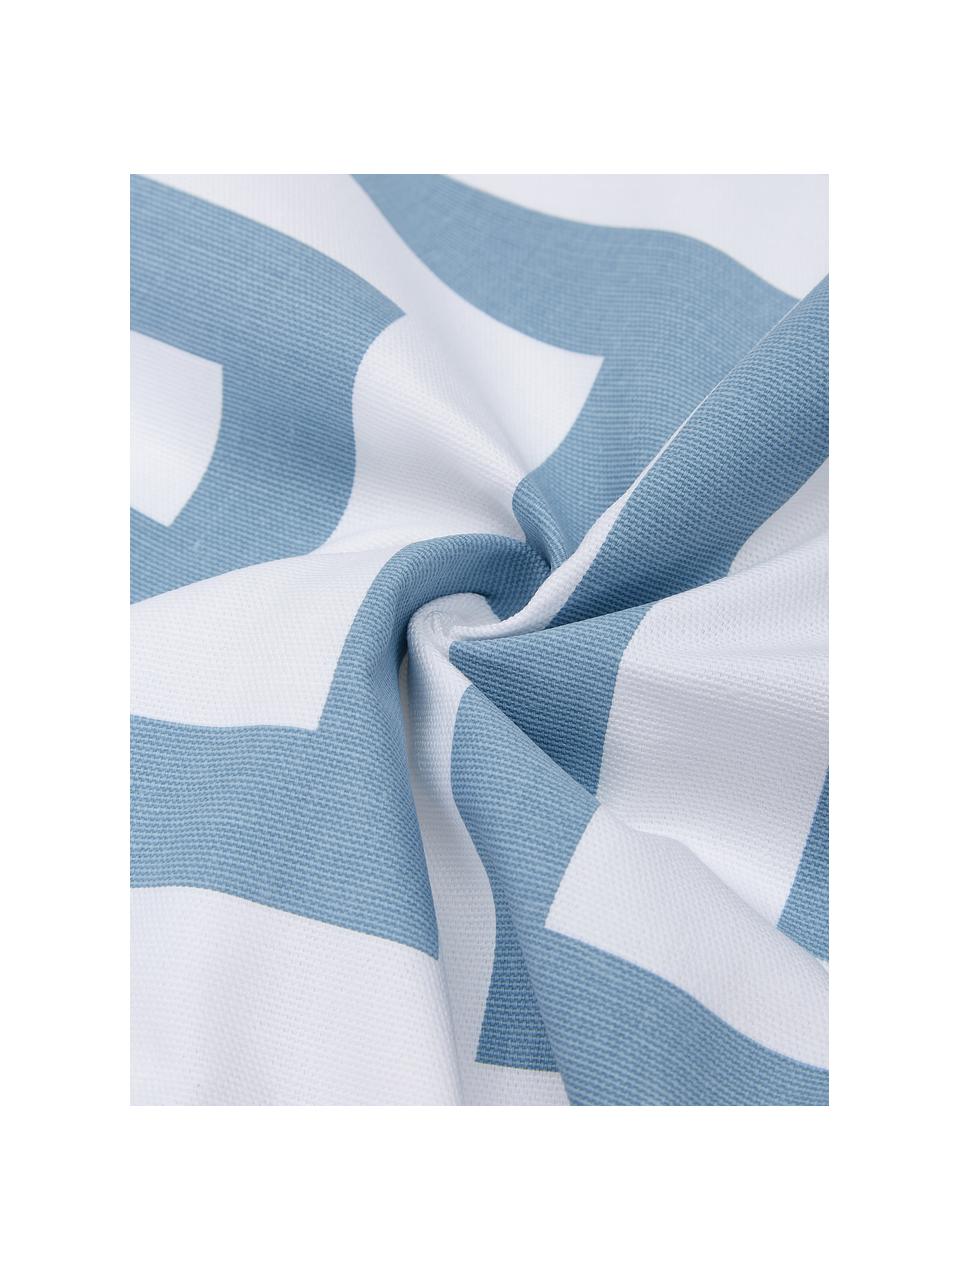 Kussenhoes Bram in lichtblauw/wit met grafisch patroon, 100% katoen, Wit, lichtblauw, 45 x 45 cm